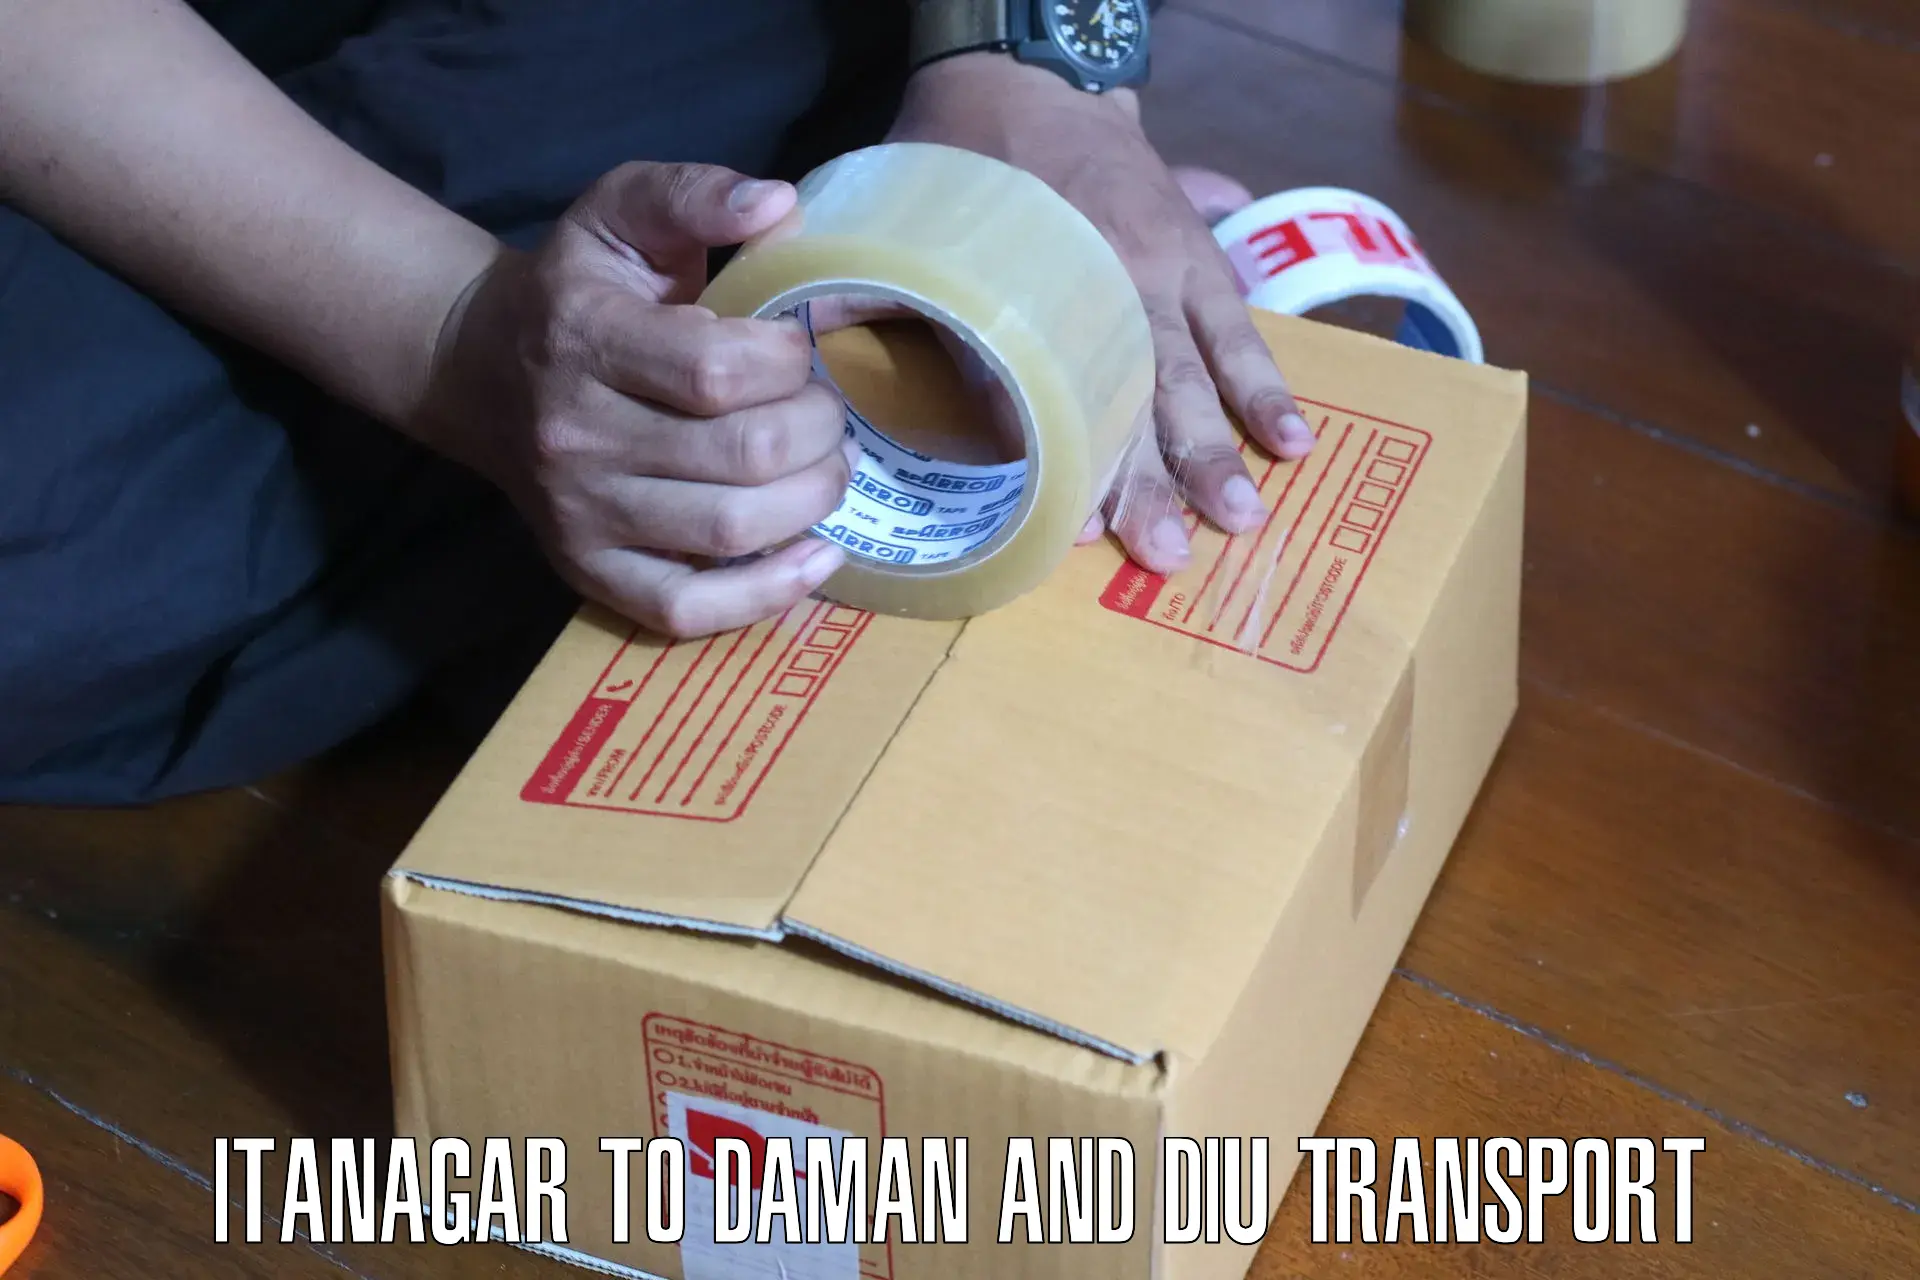 Shipping services Itanagar to Daman